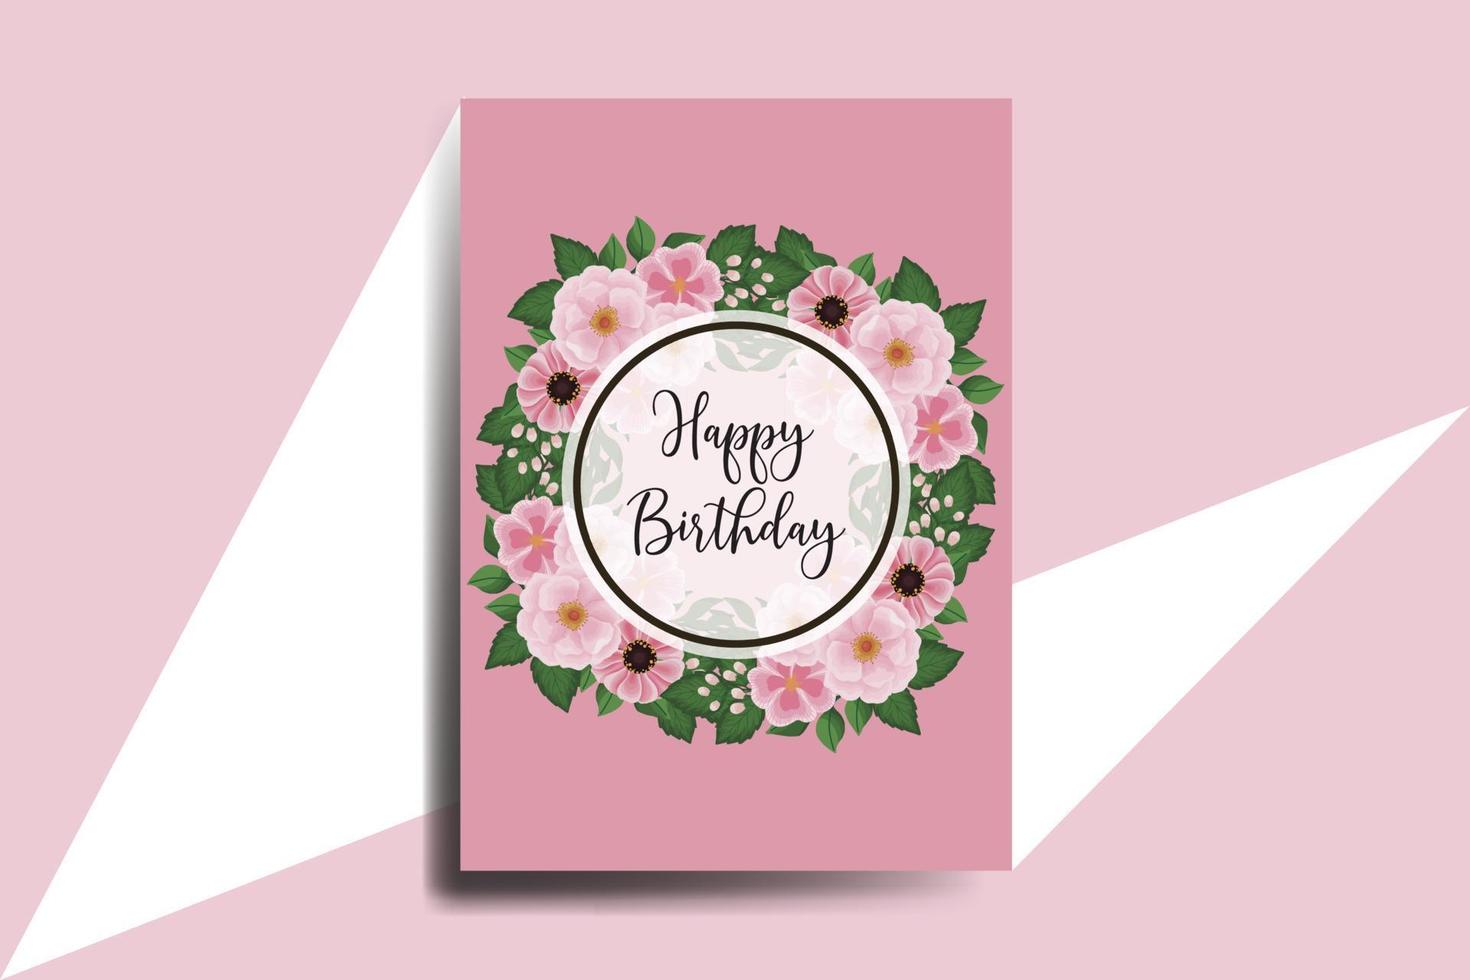 saludo tarjeta cumpleaños tarjeta digital acuarela mano dibujado zinnia y peonía flor diseño modelo vector